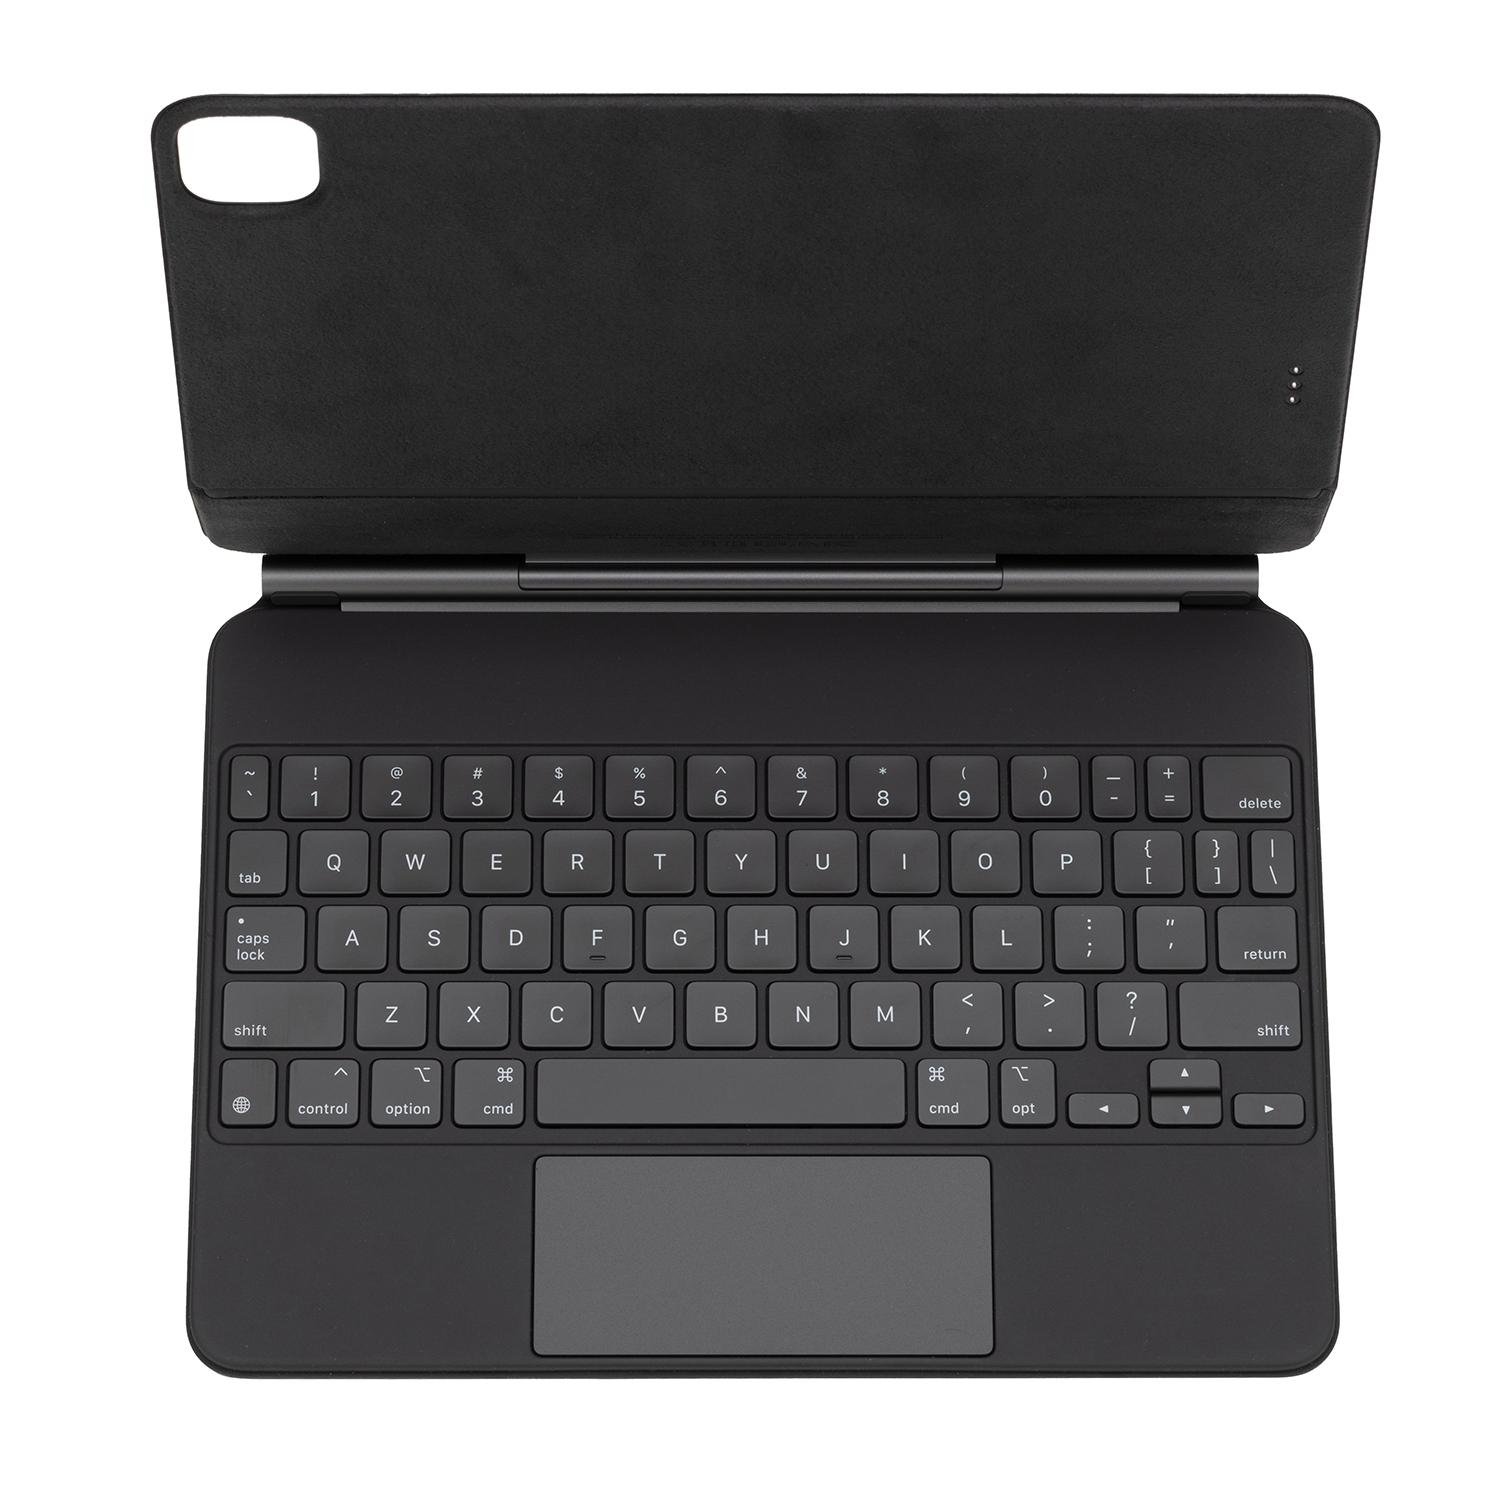 Apple MXQT2LL/A Magic Keyboard with Trackpad for at MacSales.com